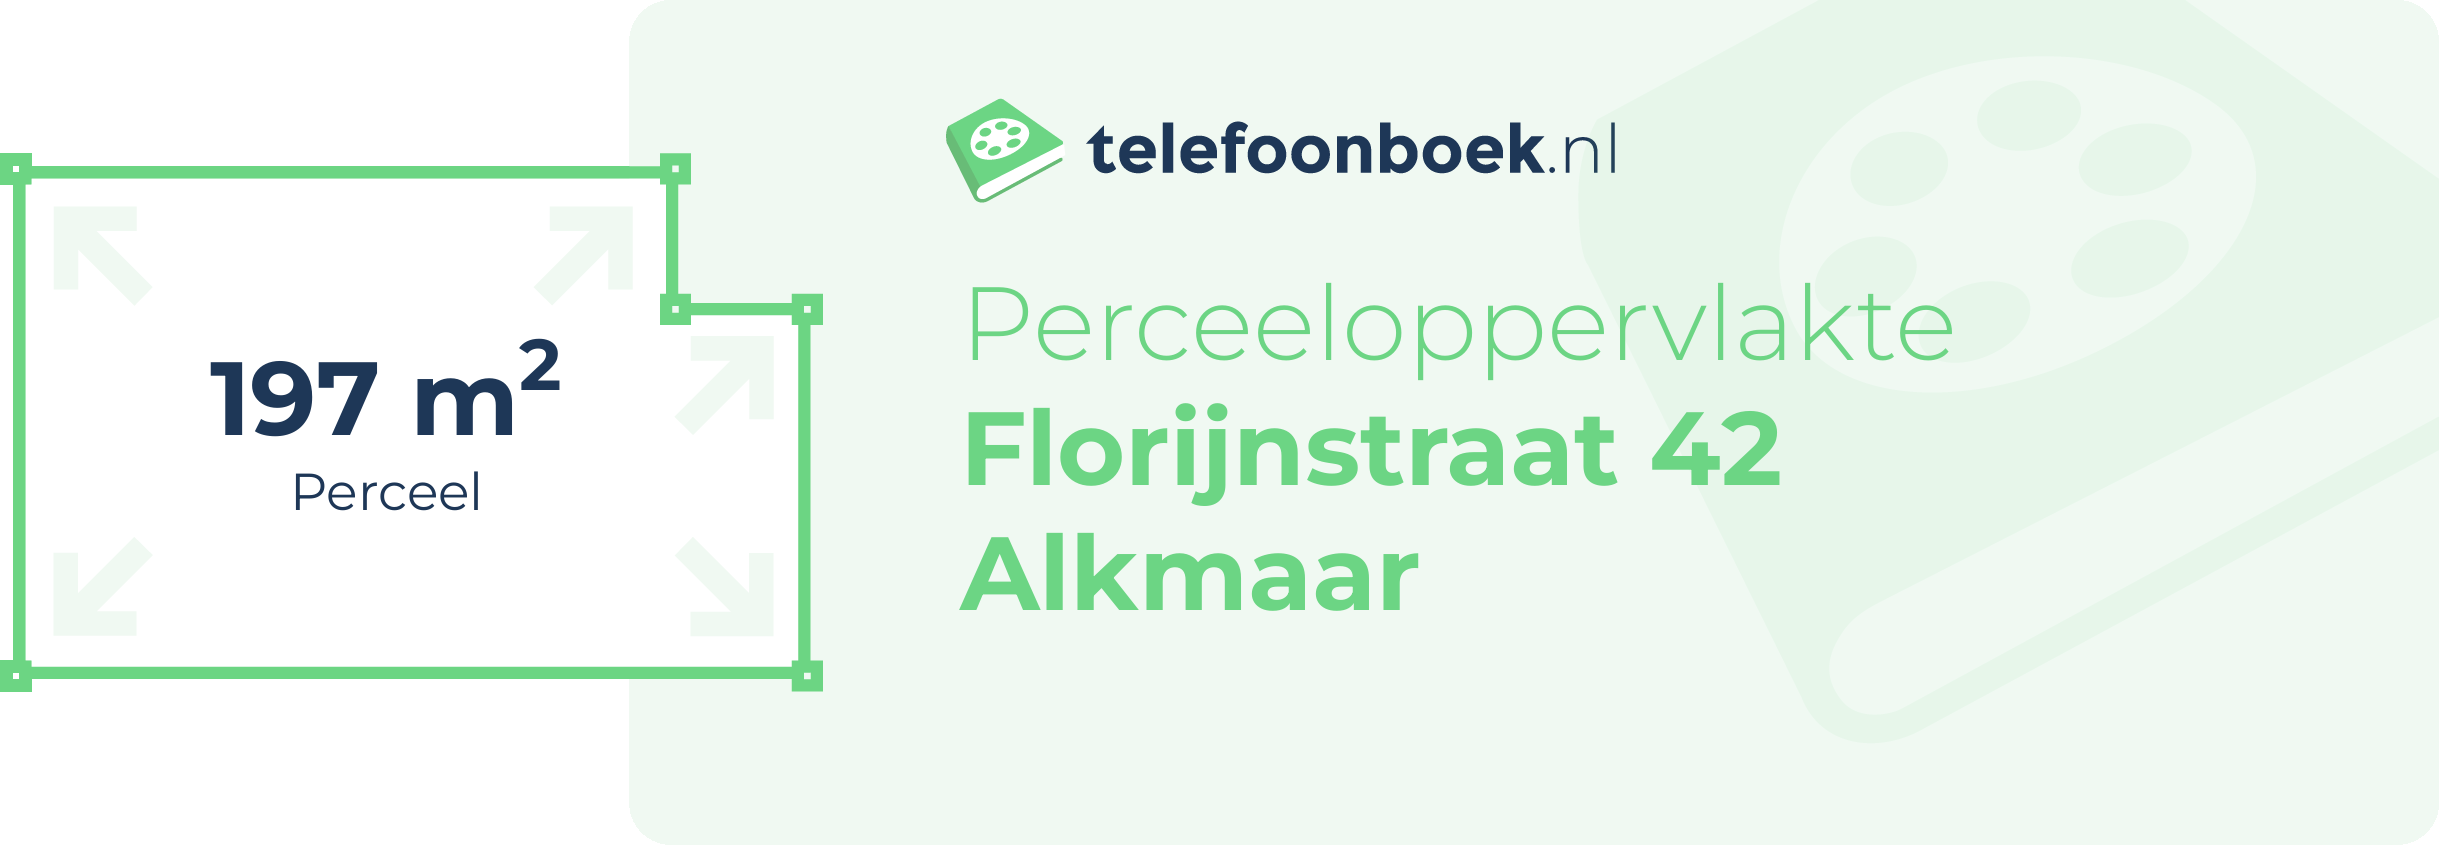 Perceeloppervlakte Florijnstraat 42 Alkmaar